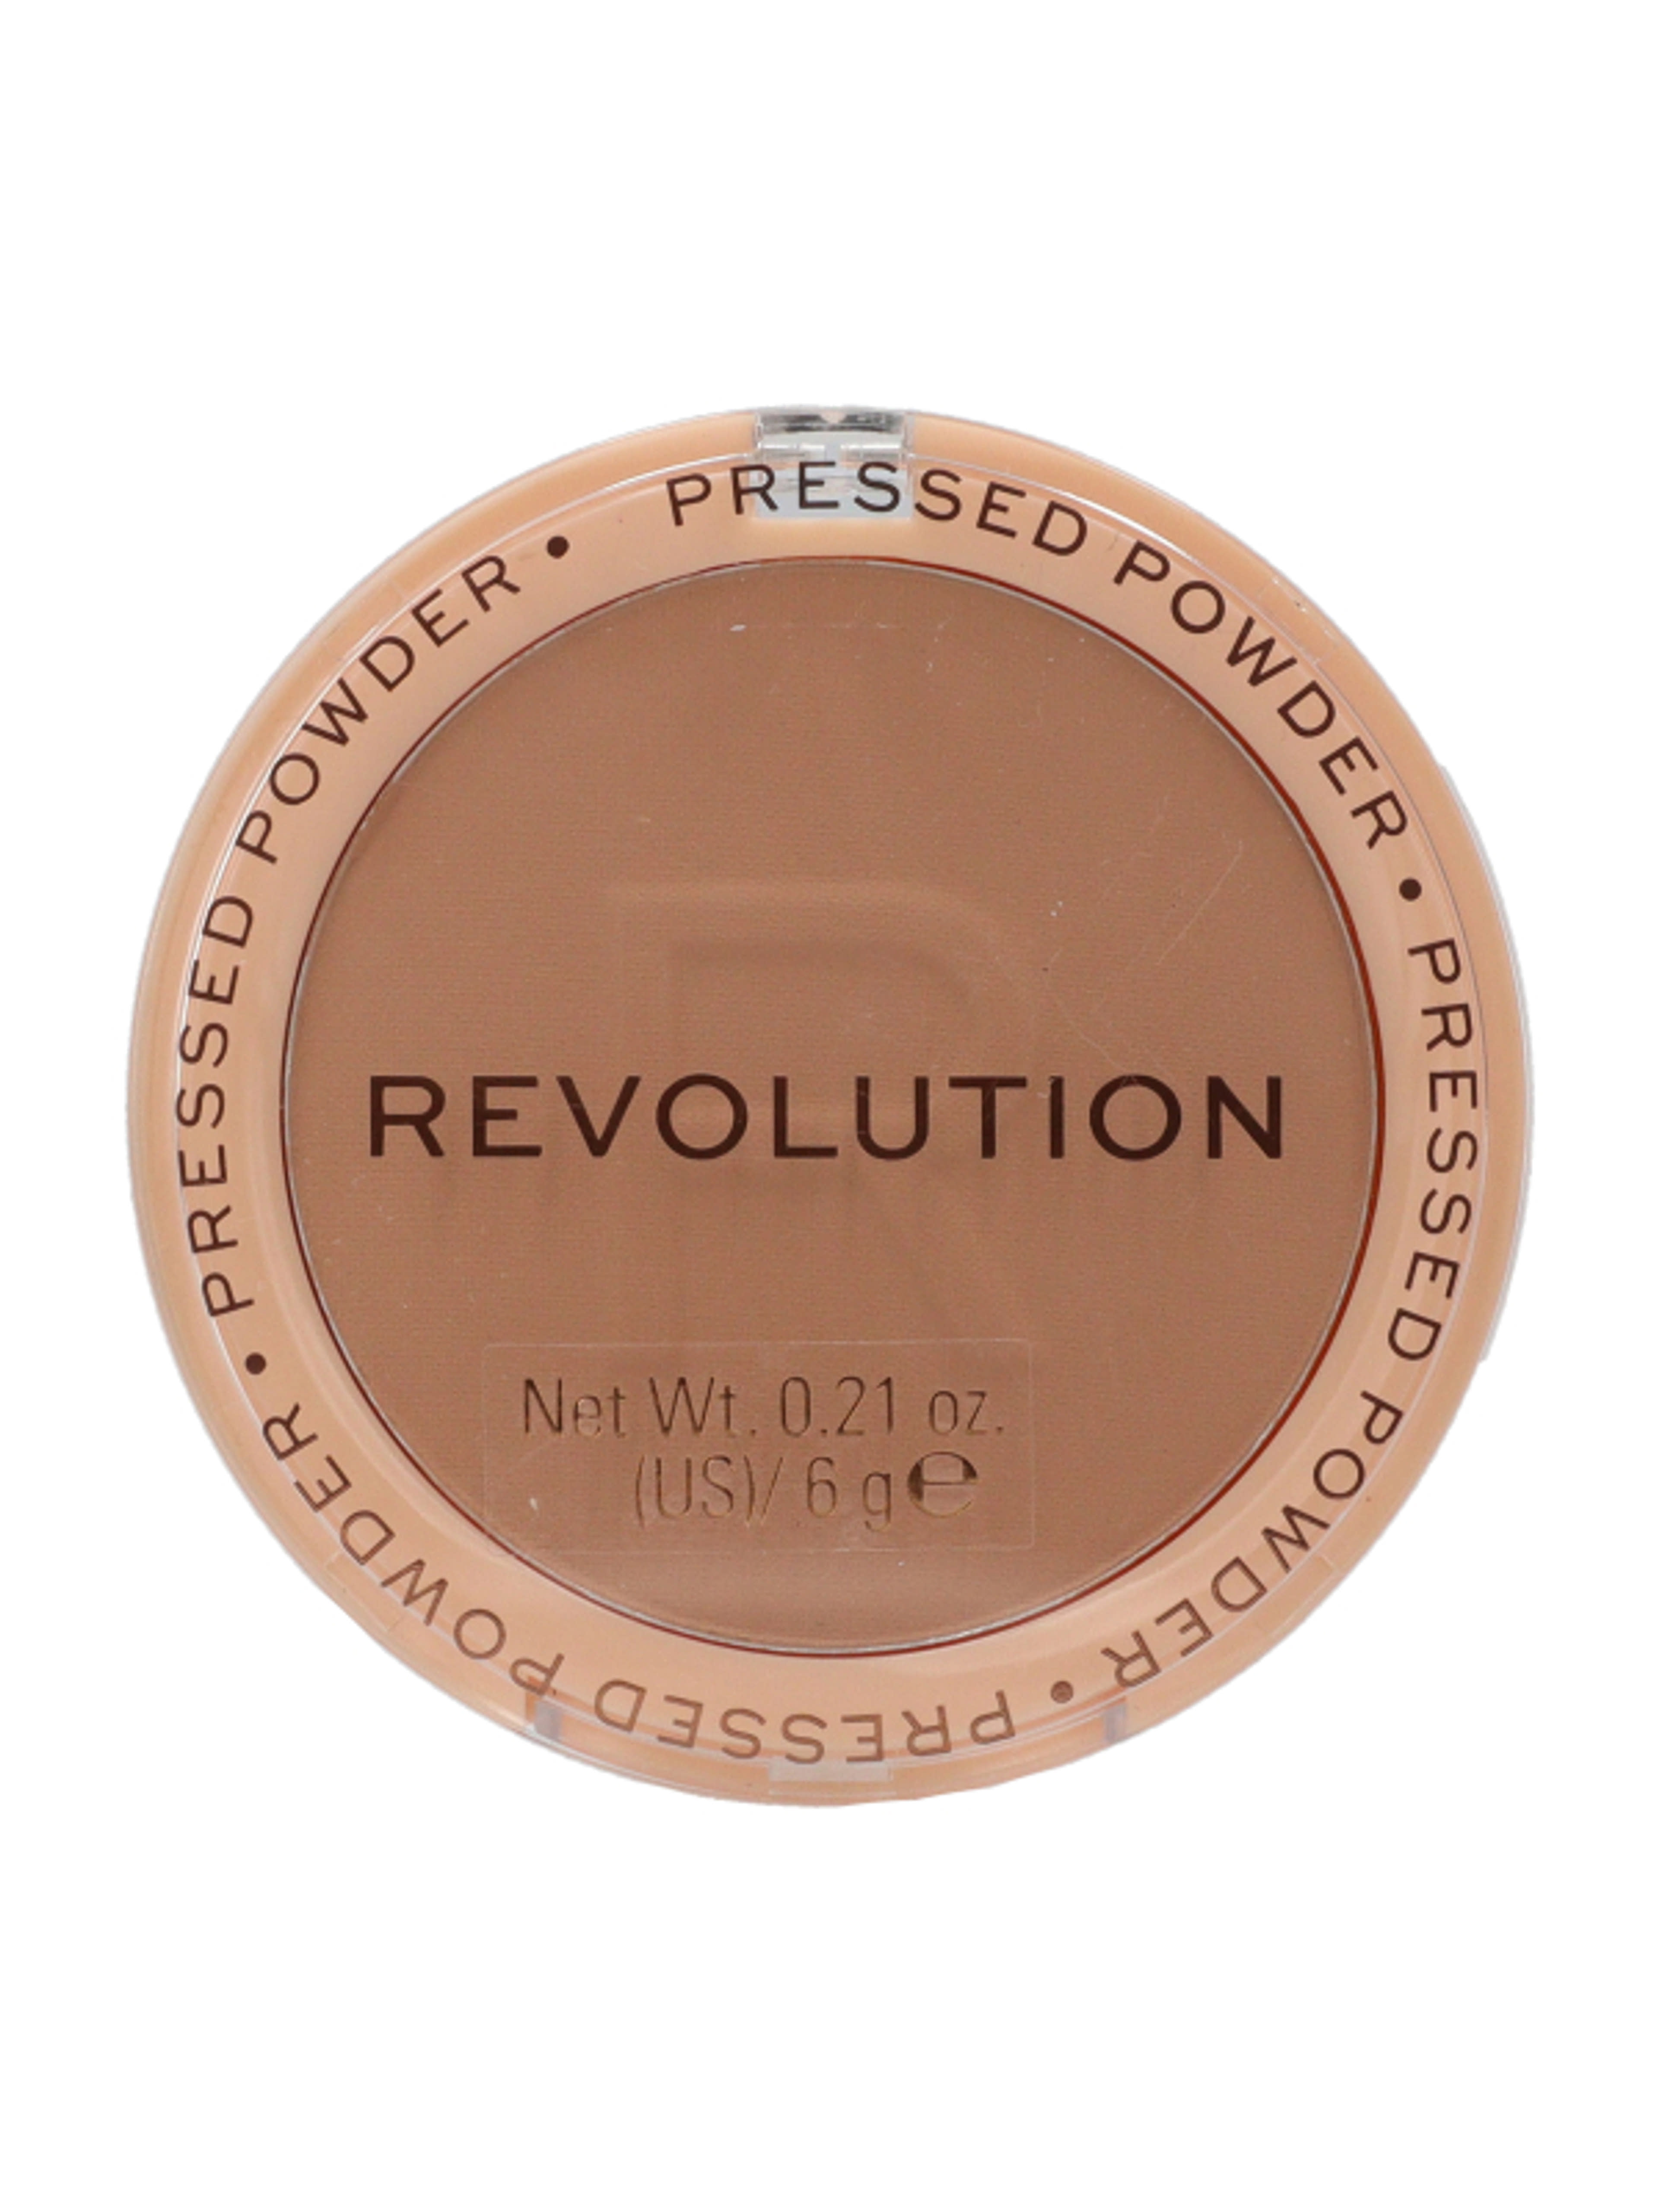 Revolution Reloaded Pressed púder, beige - 1 db